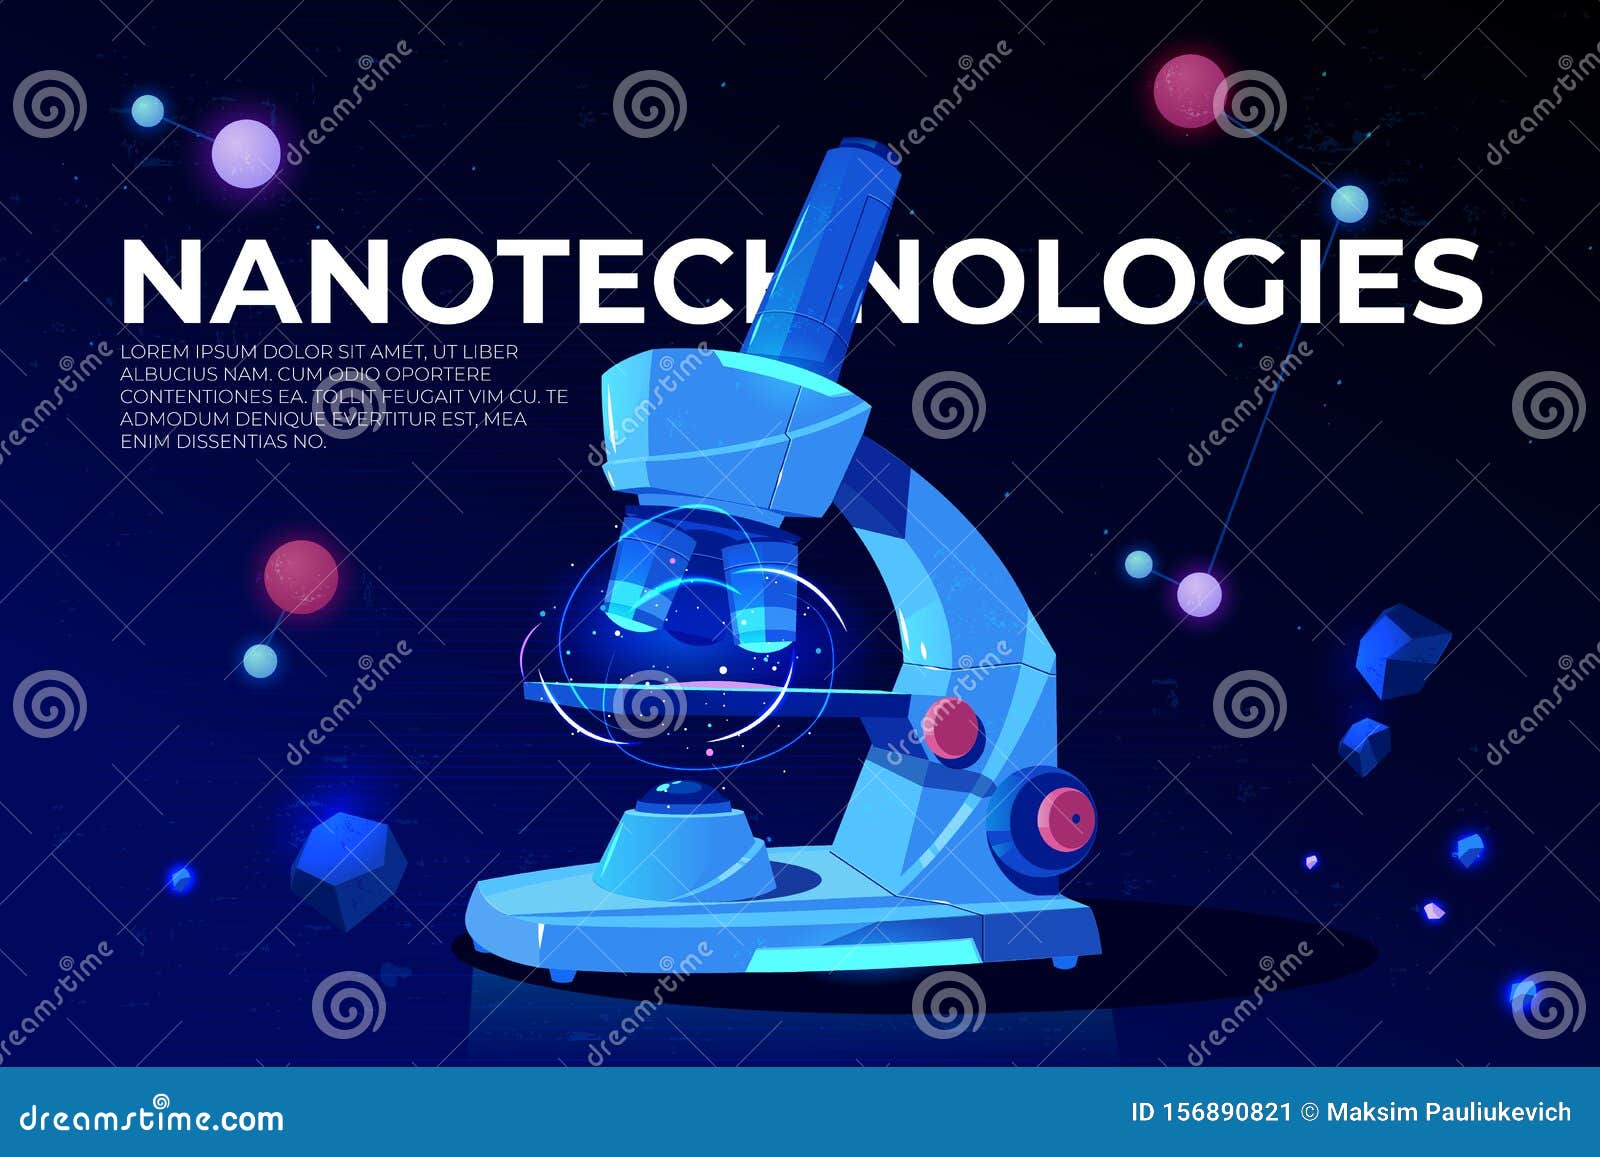 nanotechnologies research cartoon  banner